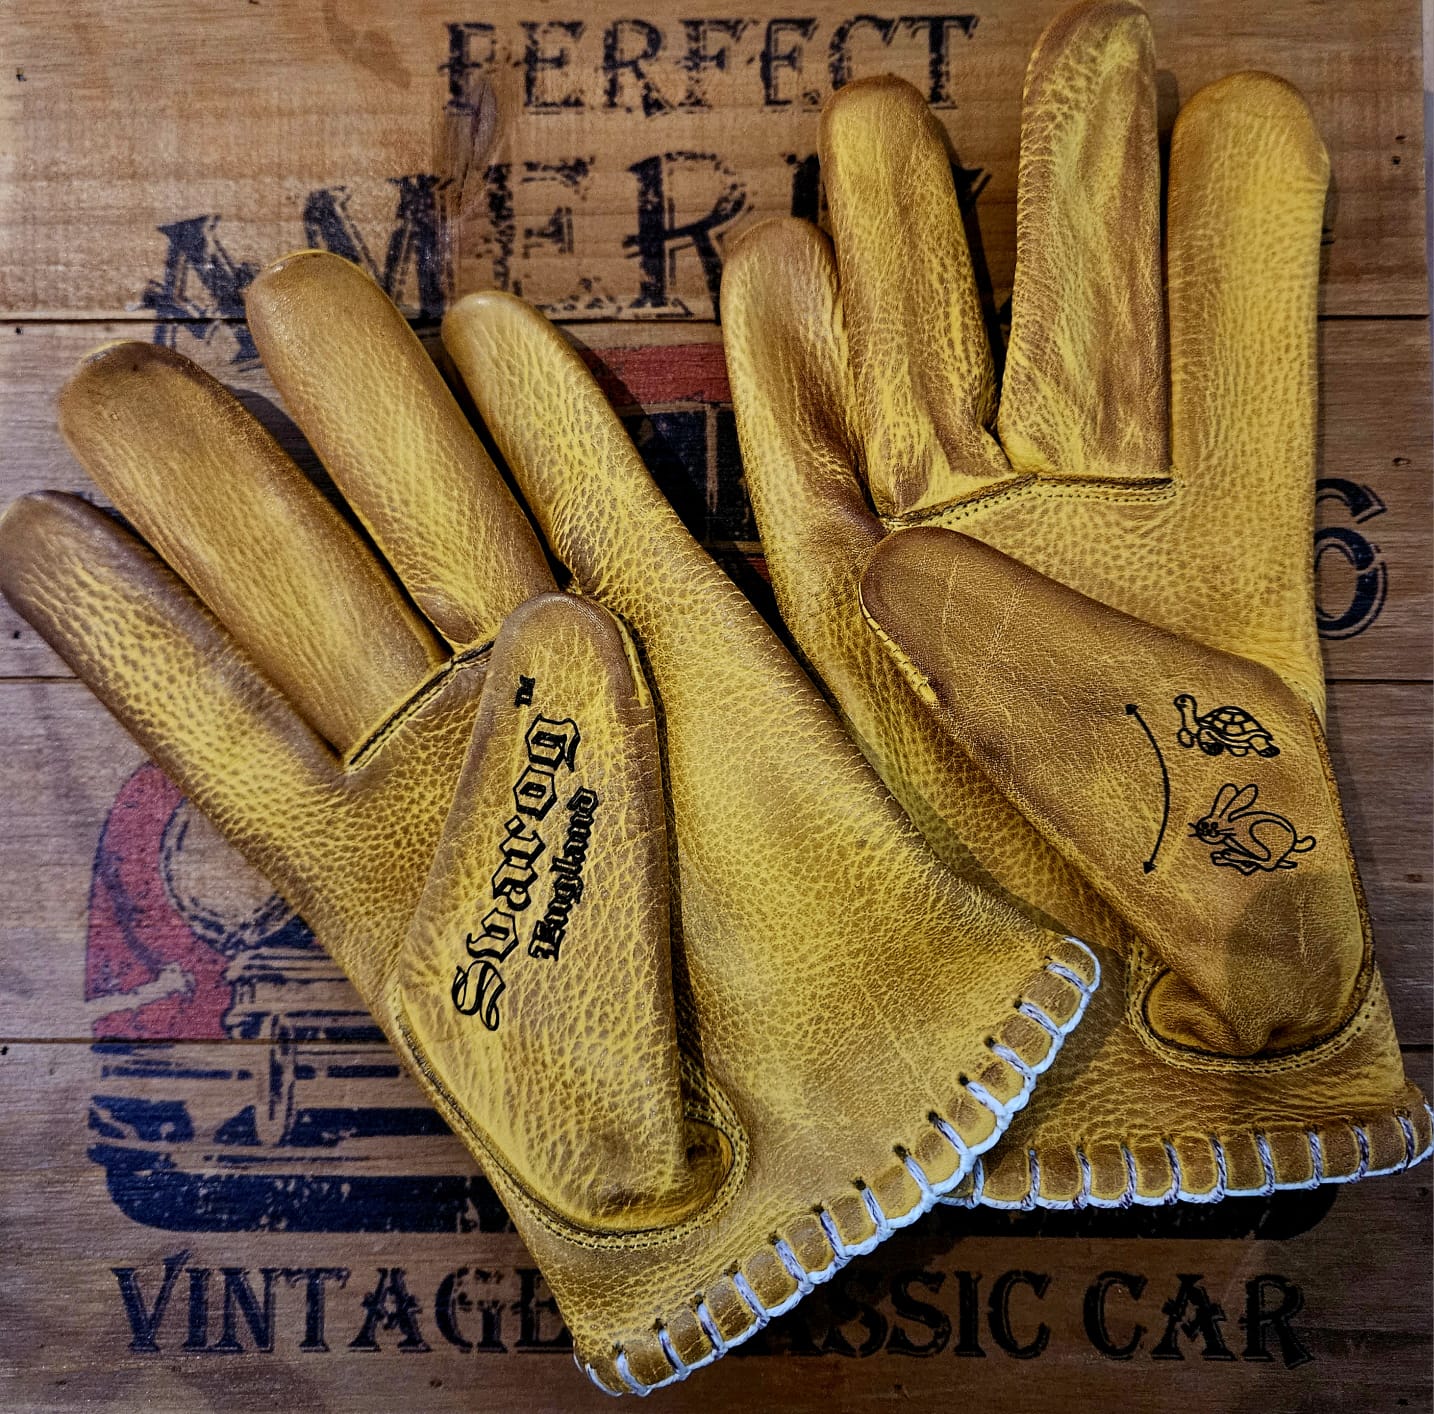 Svarog England Shanks Gloves Legend 2